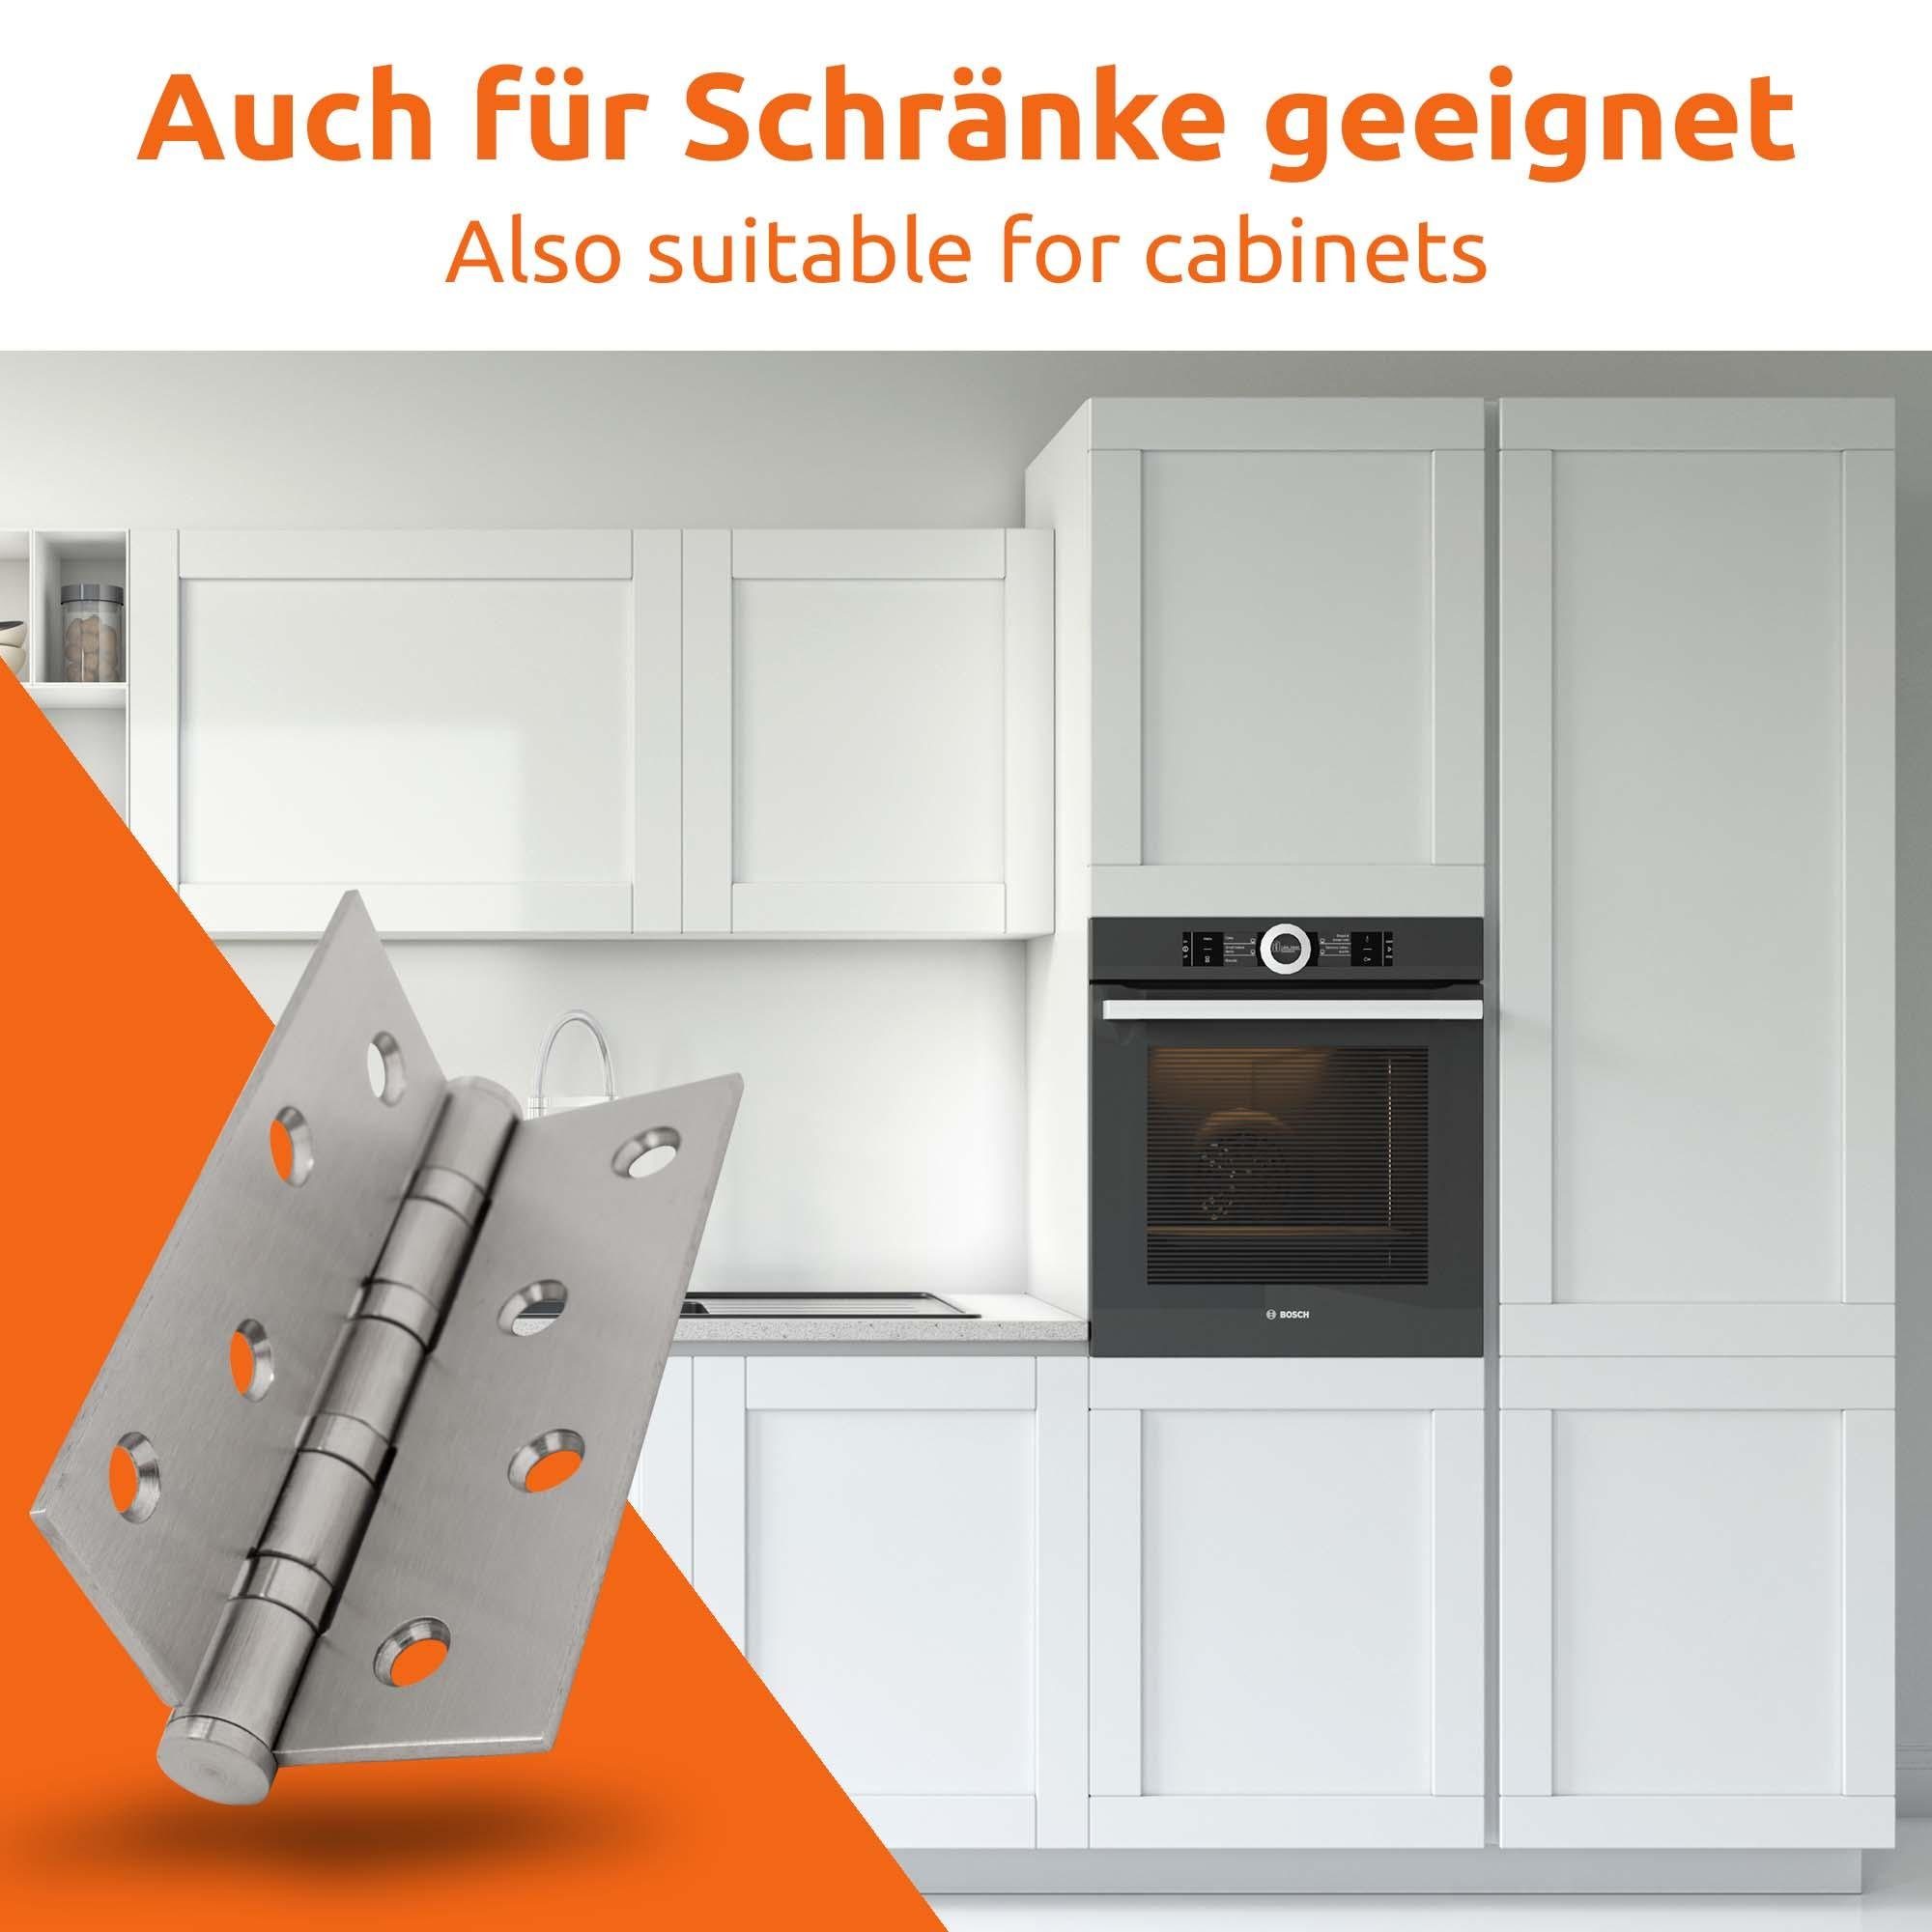 Scharnier-e Edelstahl Montageband Tür-schanier ECENCE Silber 201 2x